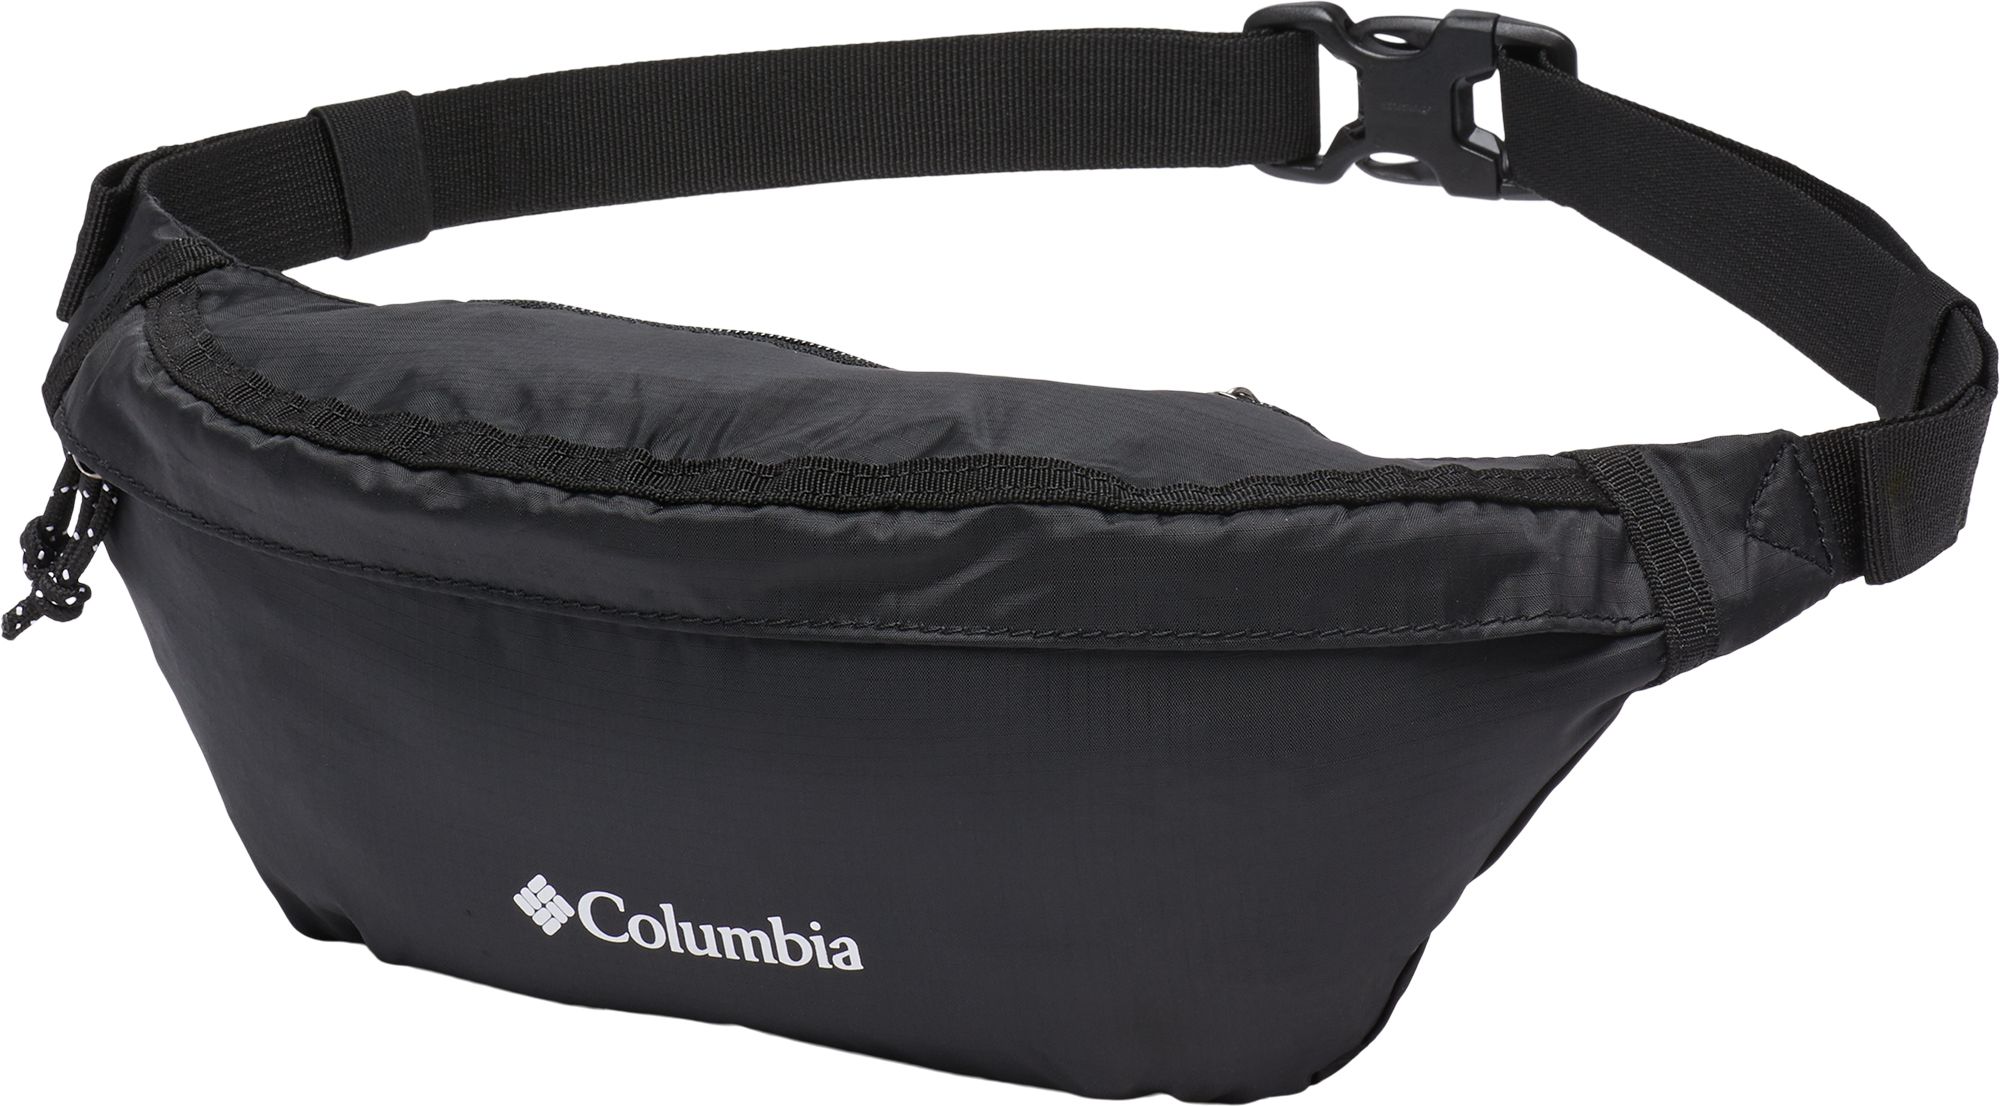 Columbia Women's Lightweight Packable Hip Pack